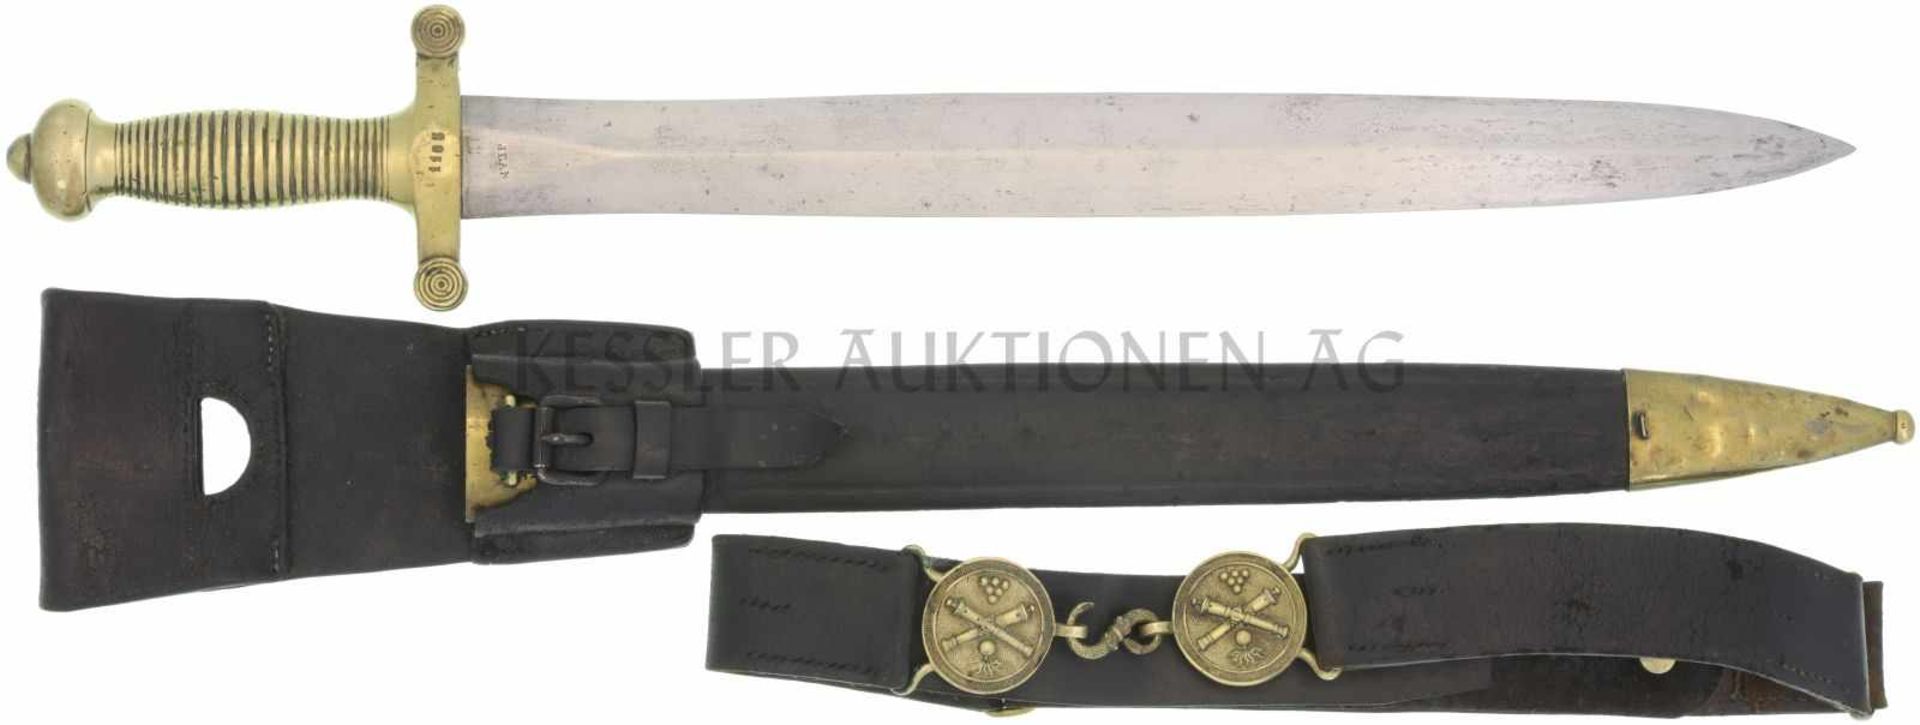 Faschinenmesser 1842/52 Messinggefäss mit 26 Rillen, Parierstange mit 4 Rillen. KL 482mm, TL